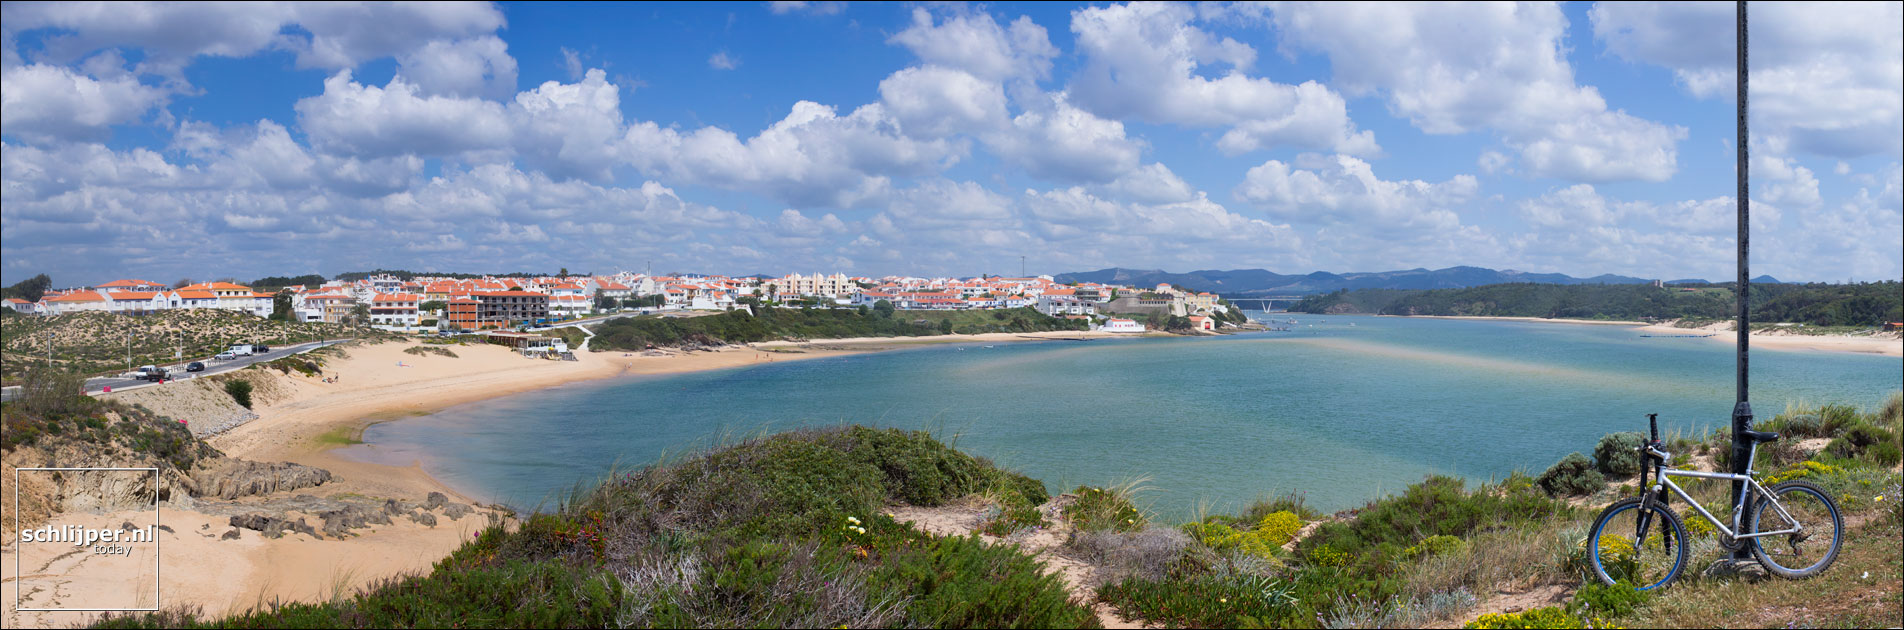 Portugal, Vila Nova de Milfontes, 12 april 2015